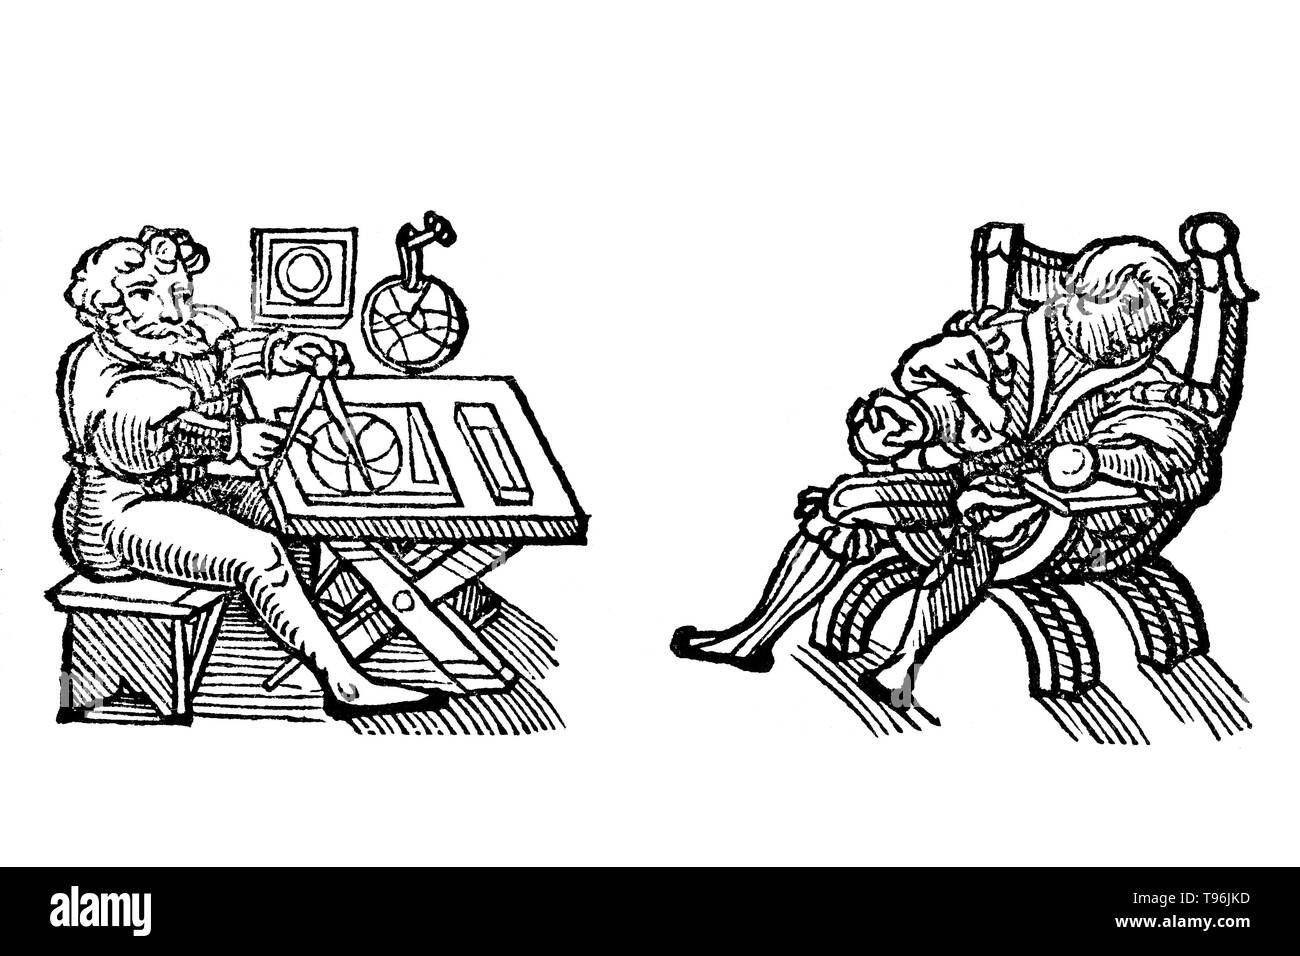 Xilografia illustrazione da Der gantzen Artzenei, 1542. Johann Dryander (Eichmann) (27 giugno 1500 - 20 dicembre 1560) era un tedesco anatomista, astronomo e medico. Nel 1535 fu nominato professore di medicina presso l'Università di Marburg. Dryander è stato uno dei primi autori di libri di testo per illustrare con xilografie e il primo per illustrare una dissezione galenica del cervello umano. Una edizione ampliata di questo inizio di libro, il Anatomiae pars prima, è stato pubblicato nel 1537. Foto Stock